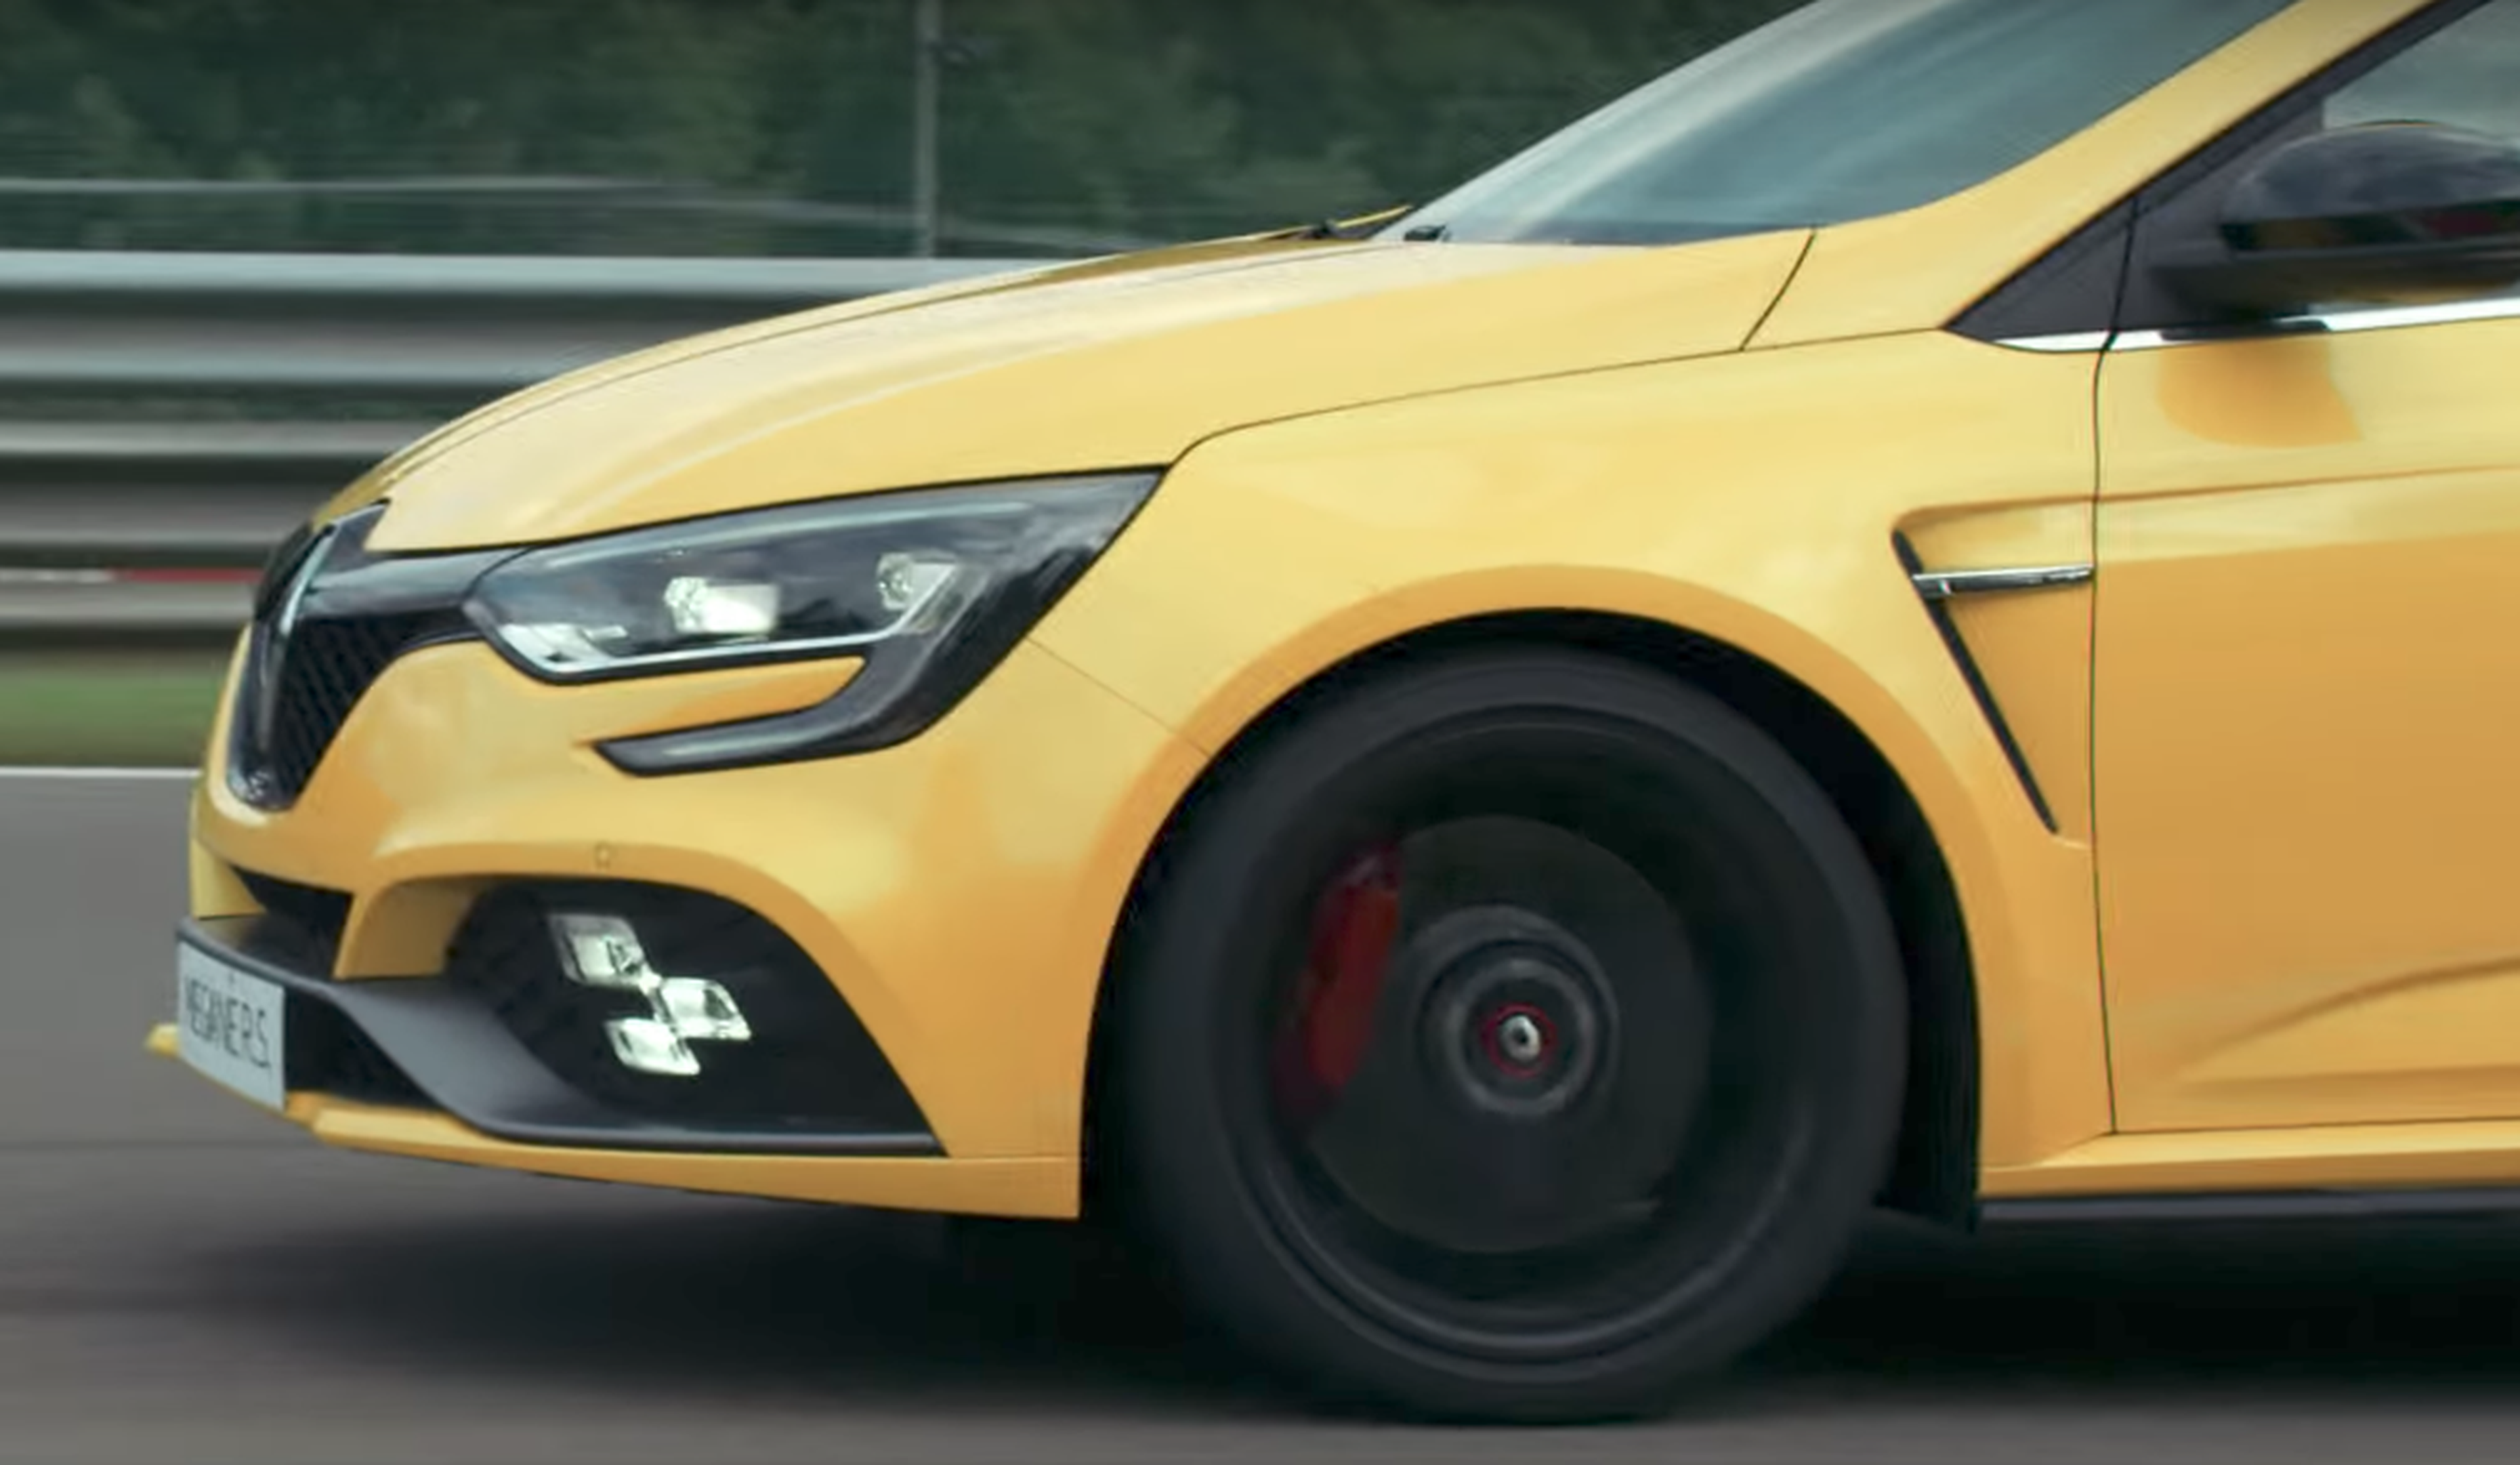 VÍDEO: Hülkenberg prueba el Renault Mégane RS 2018 en Spa [TG]